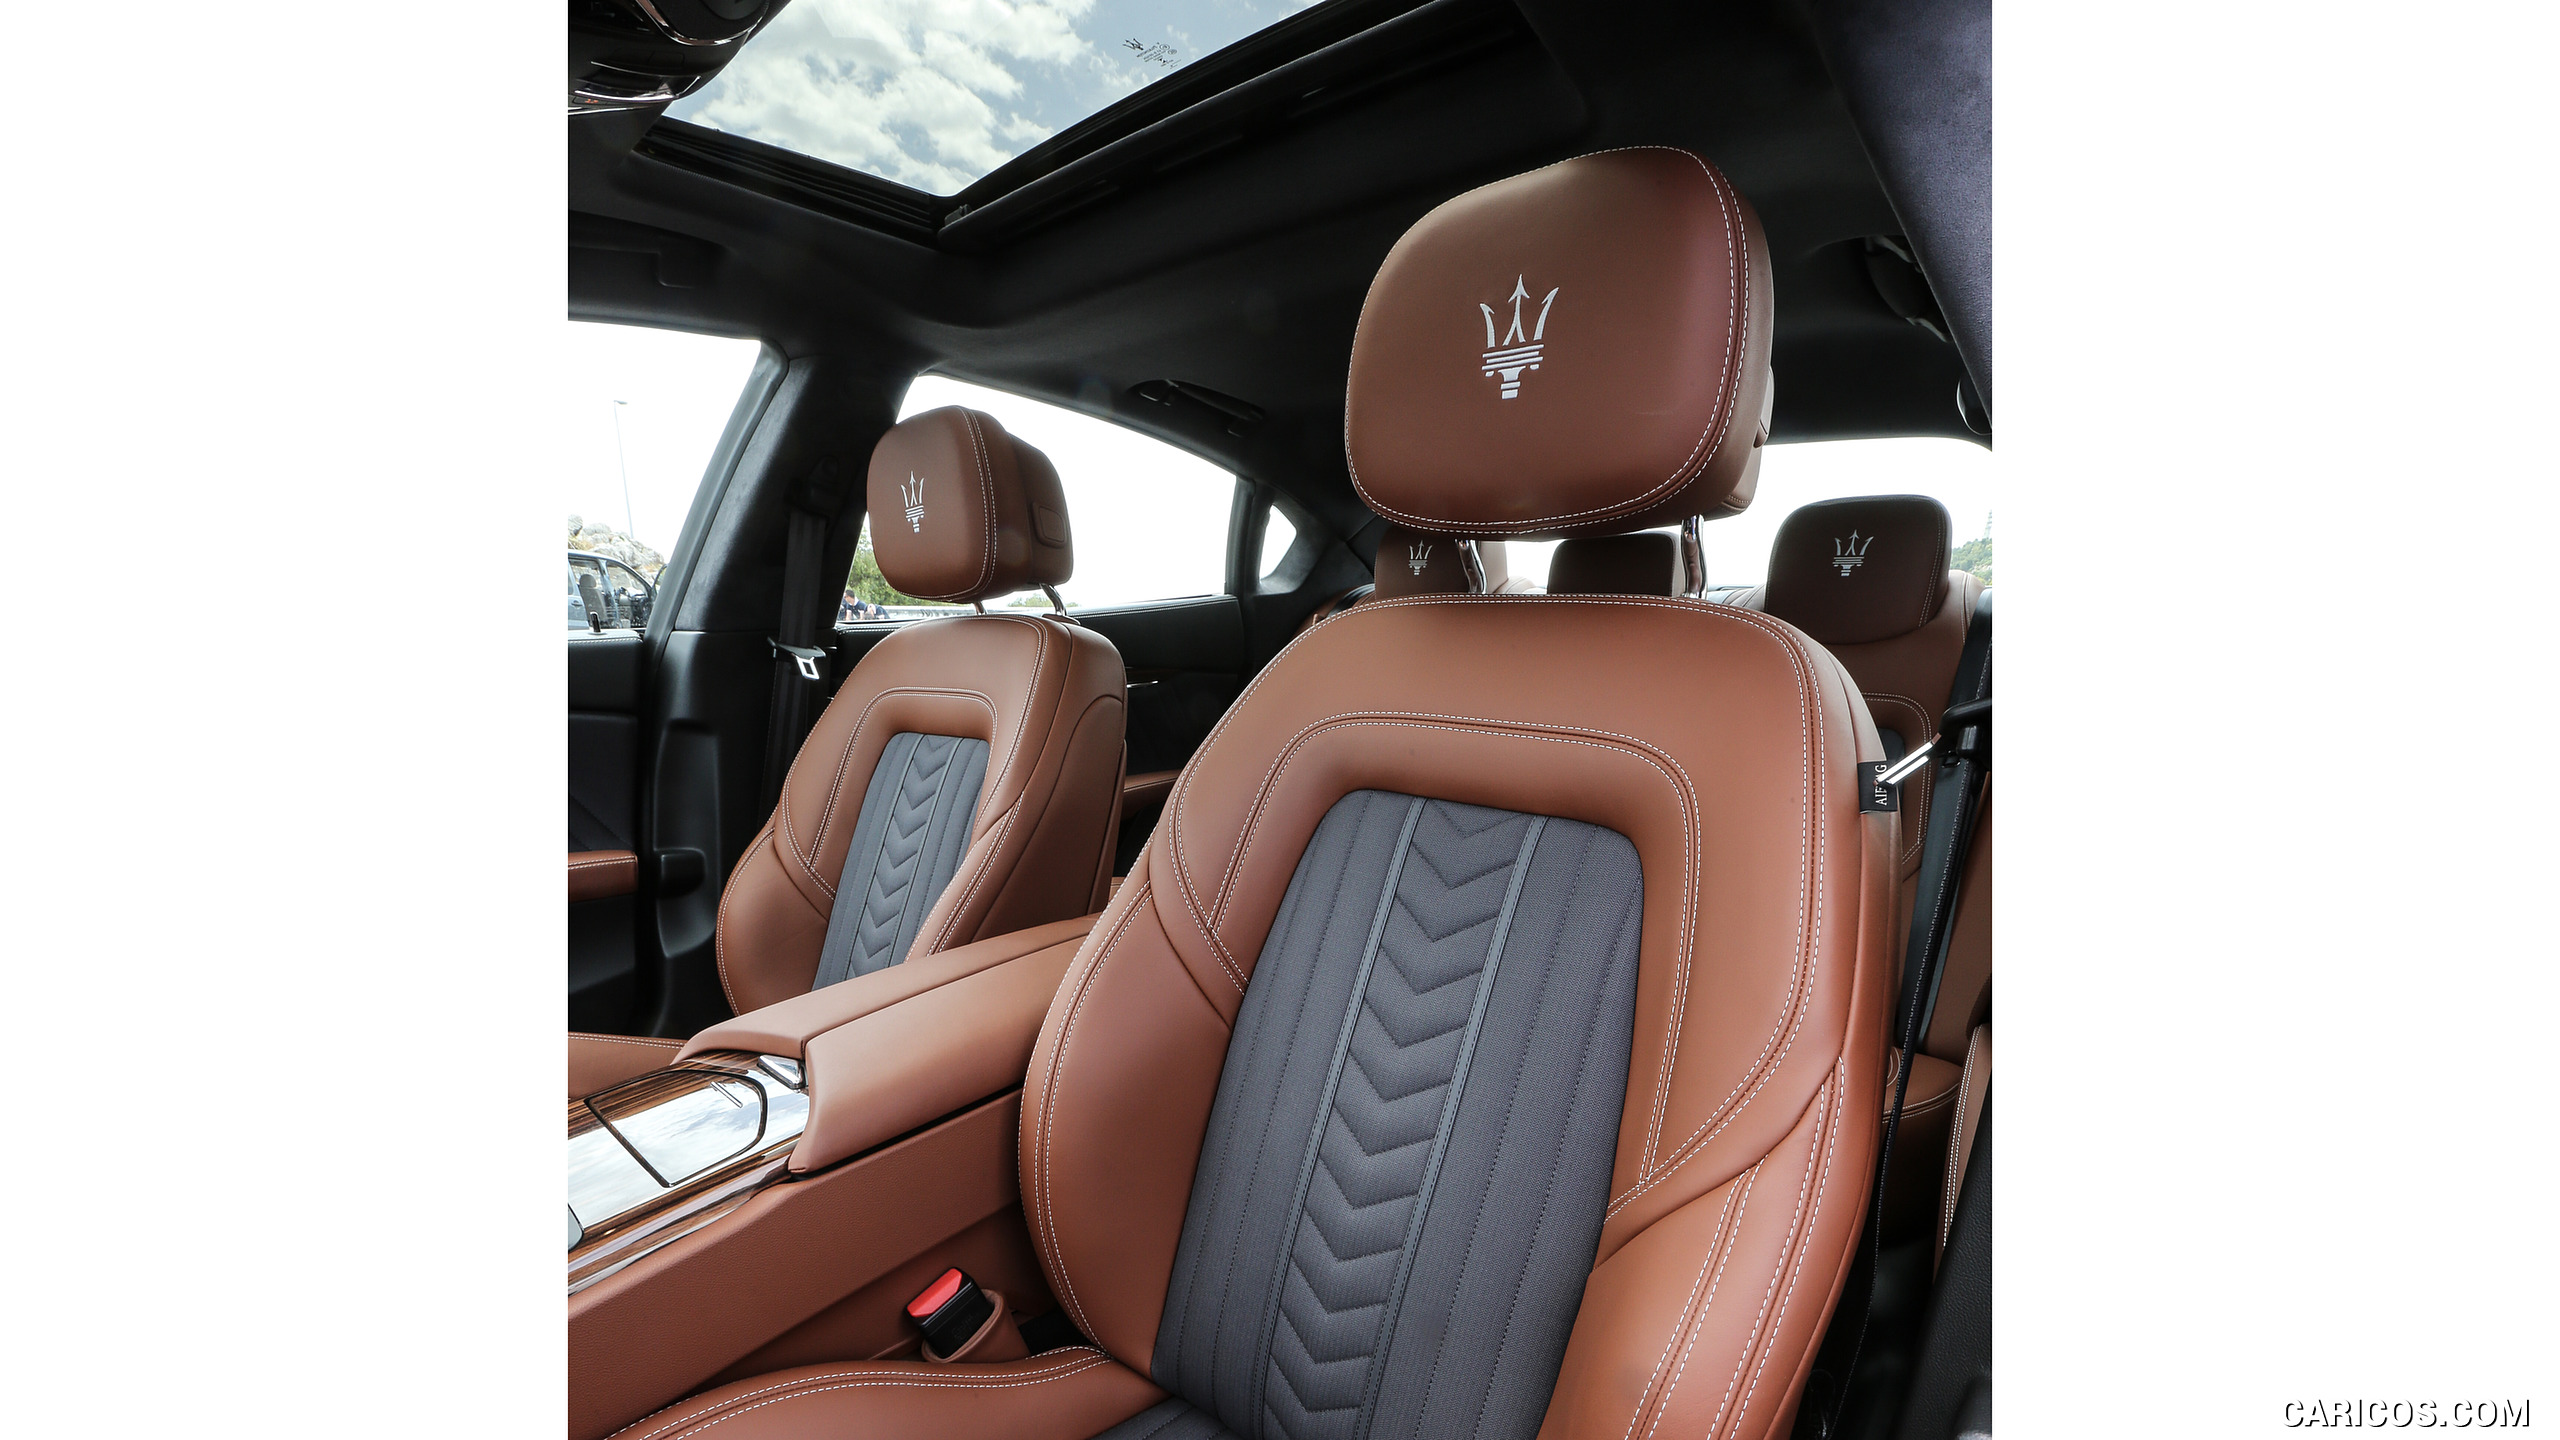 2017 Maserati Quattroporte GTS GranLusso - Interior, Front Seats, #43 of 80